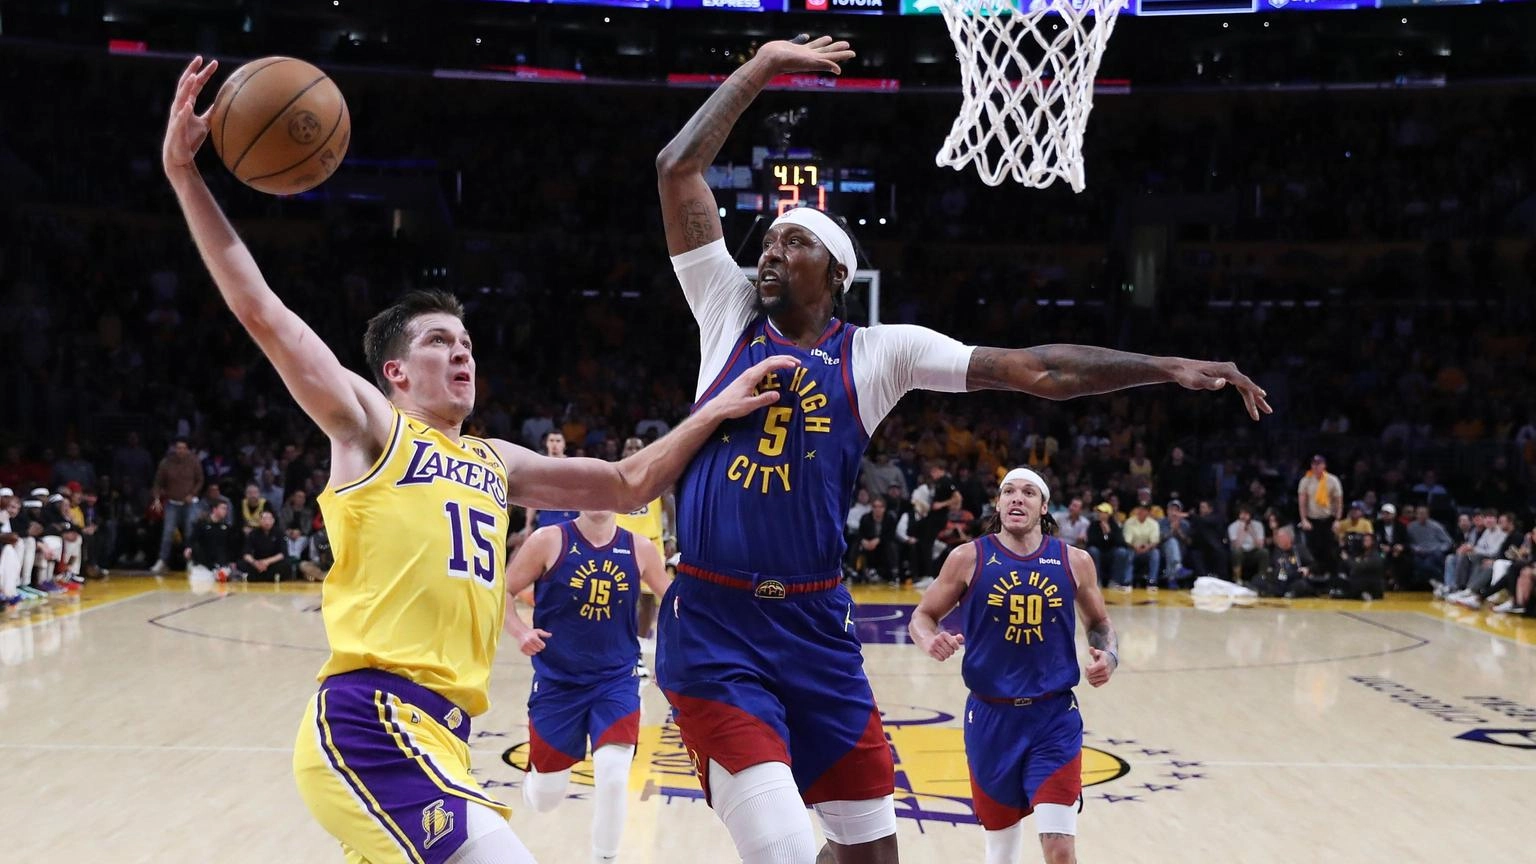 Basket: playoff Nba, Denver schiaccia i Lakers e va sul 3-0